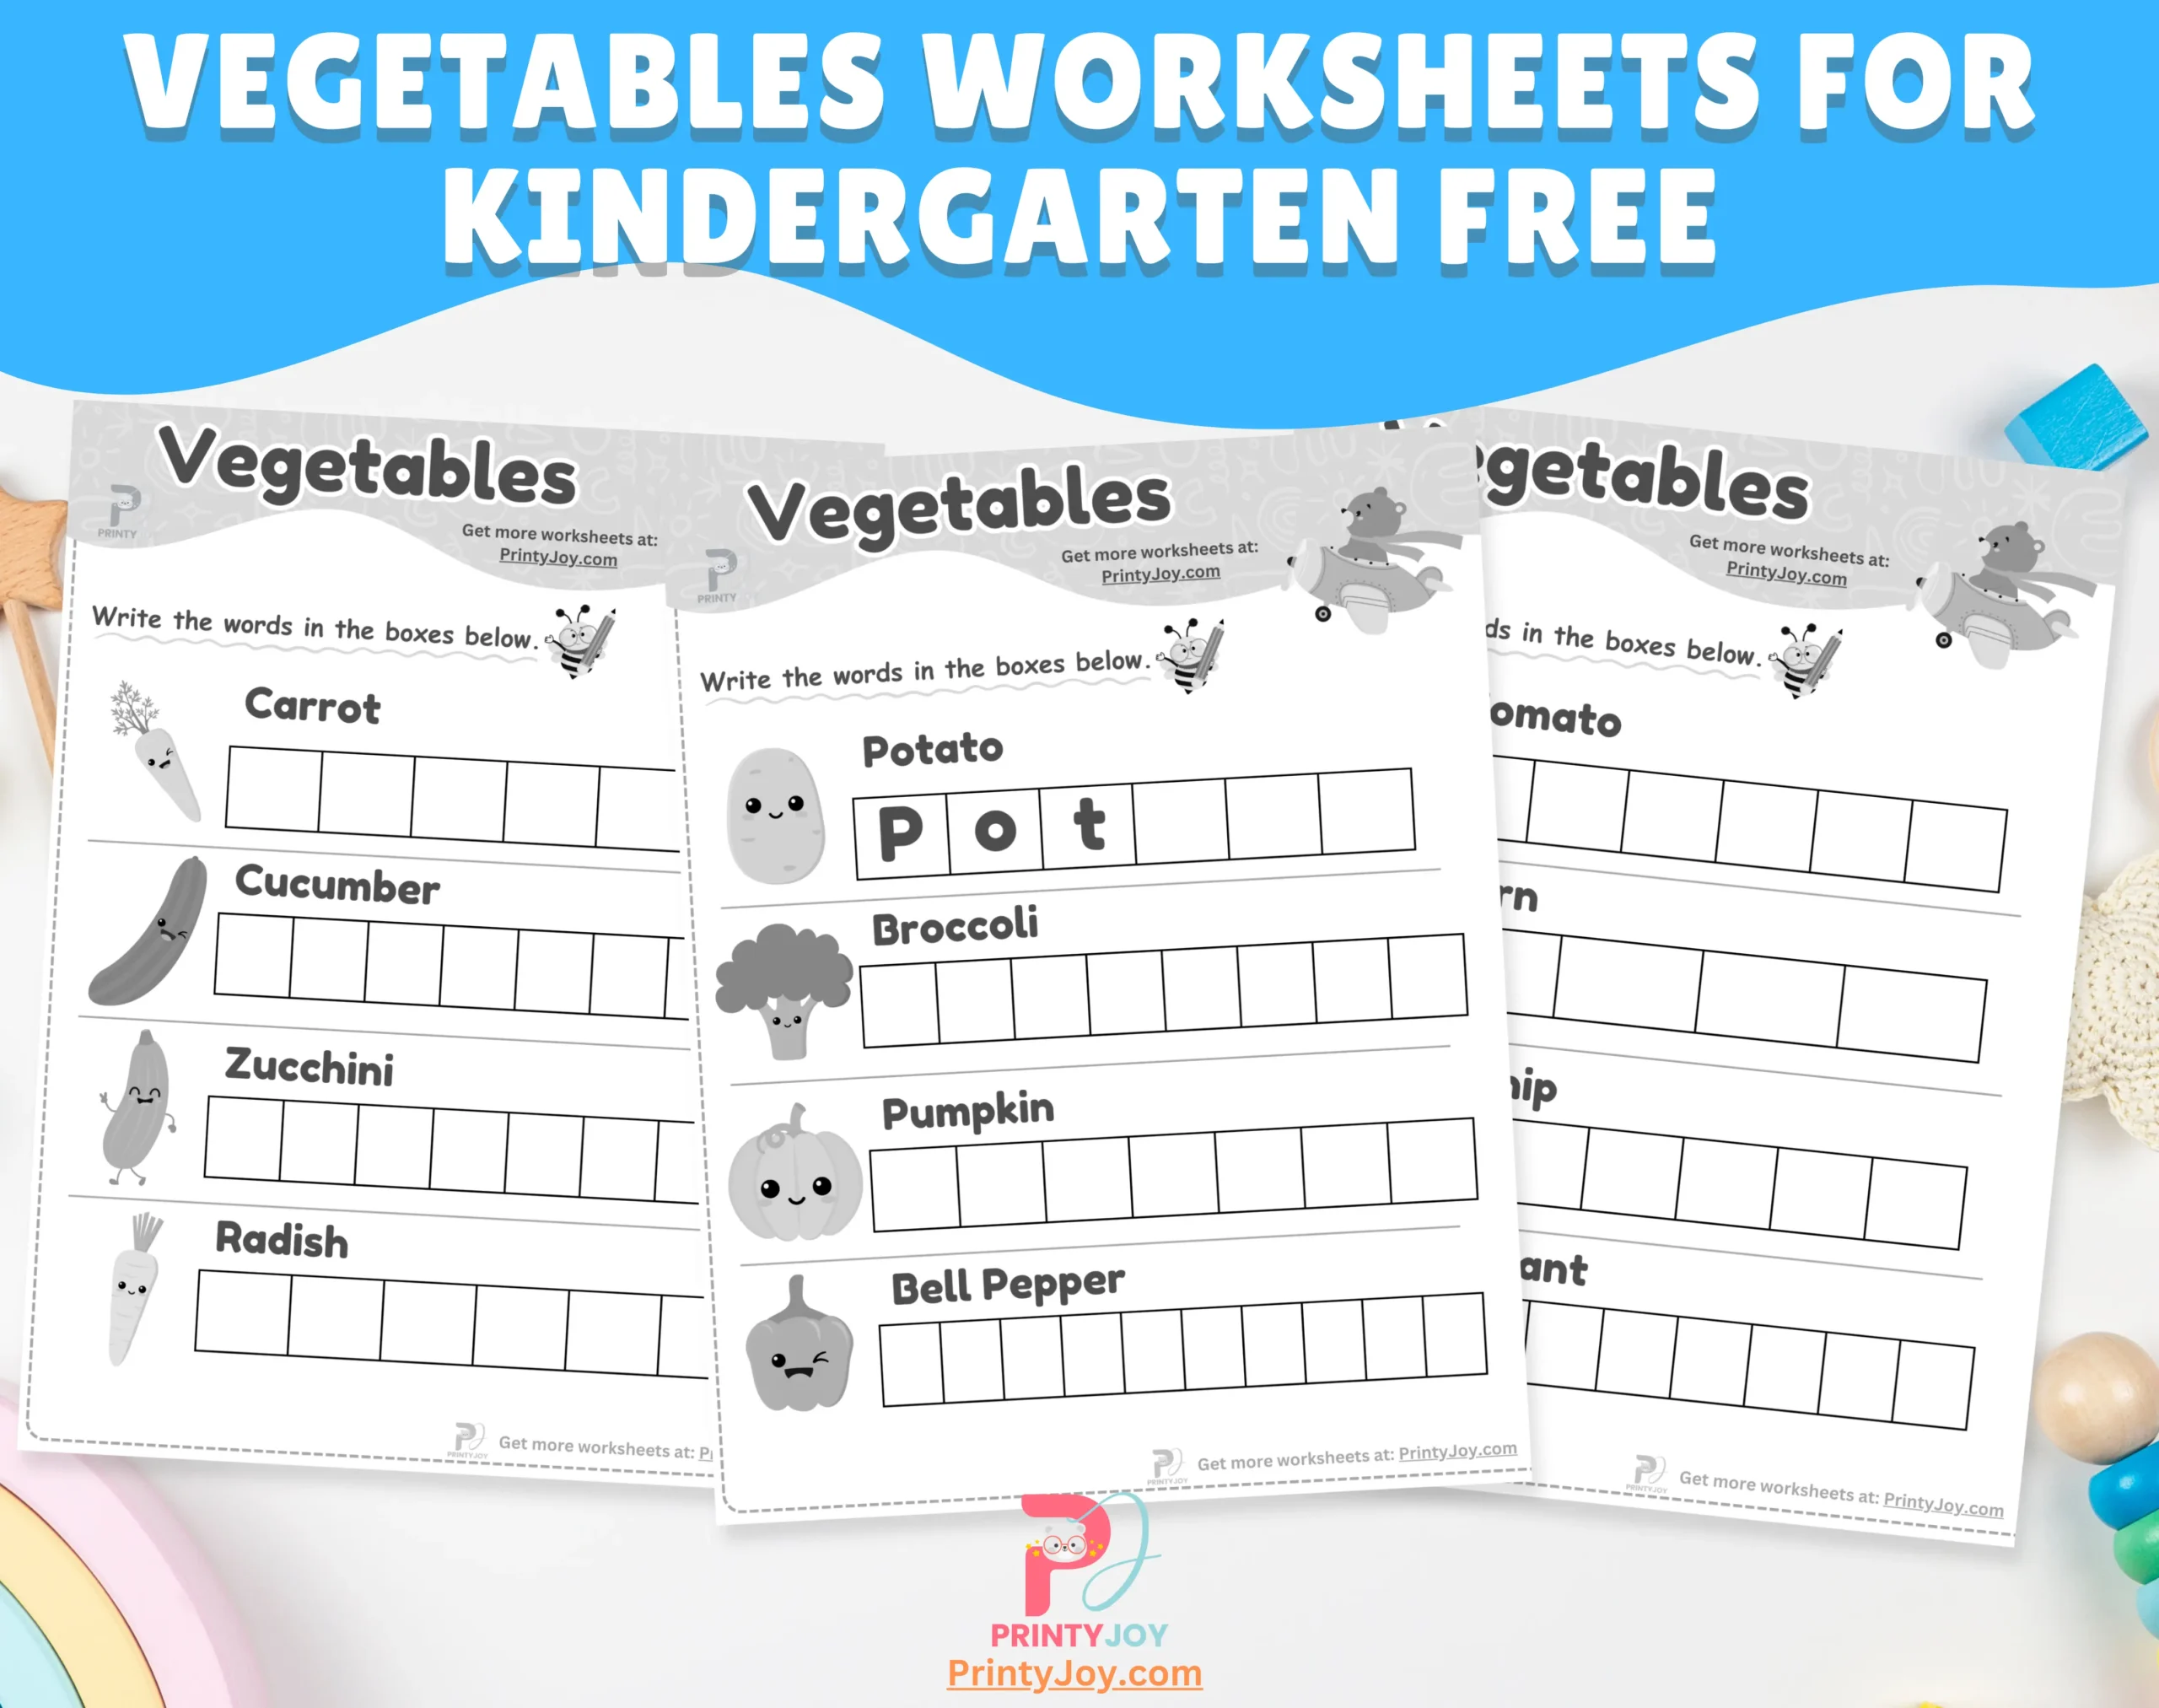 Vegetables Worksheets For Kindergarten Free